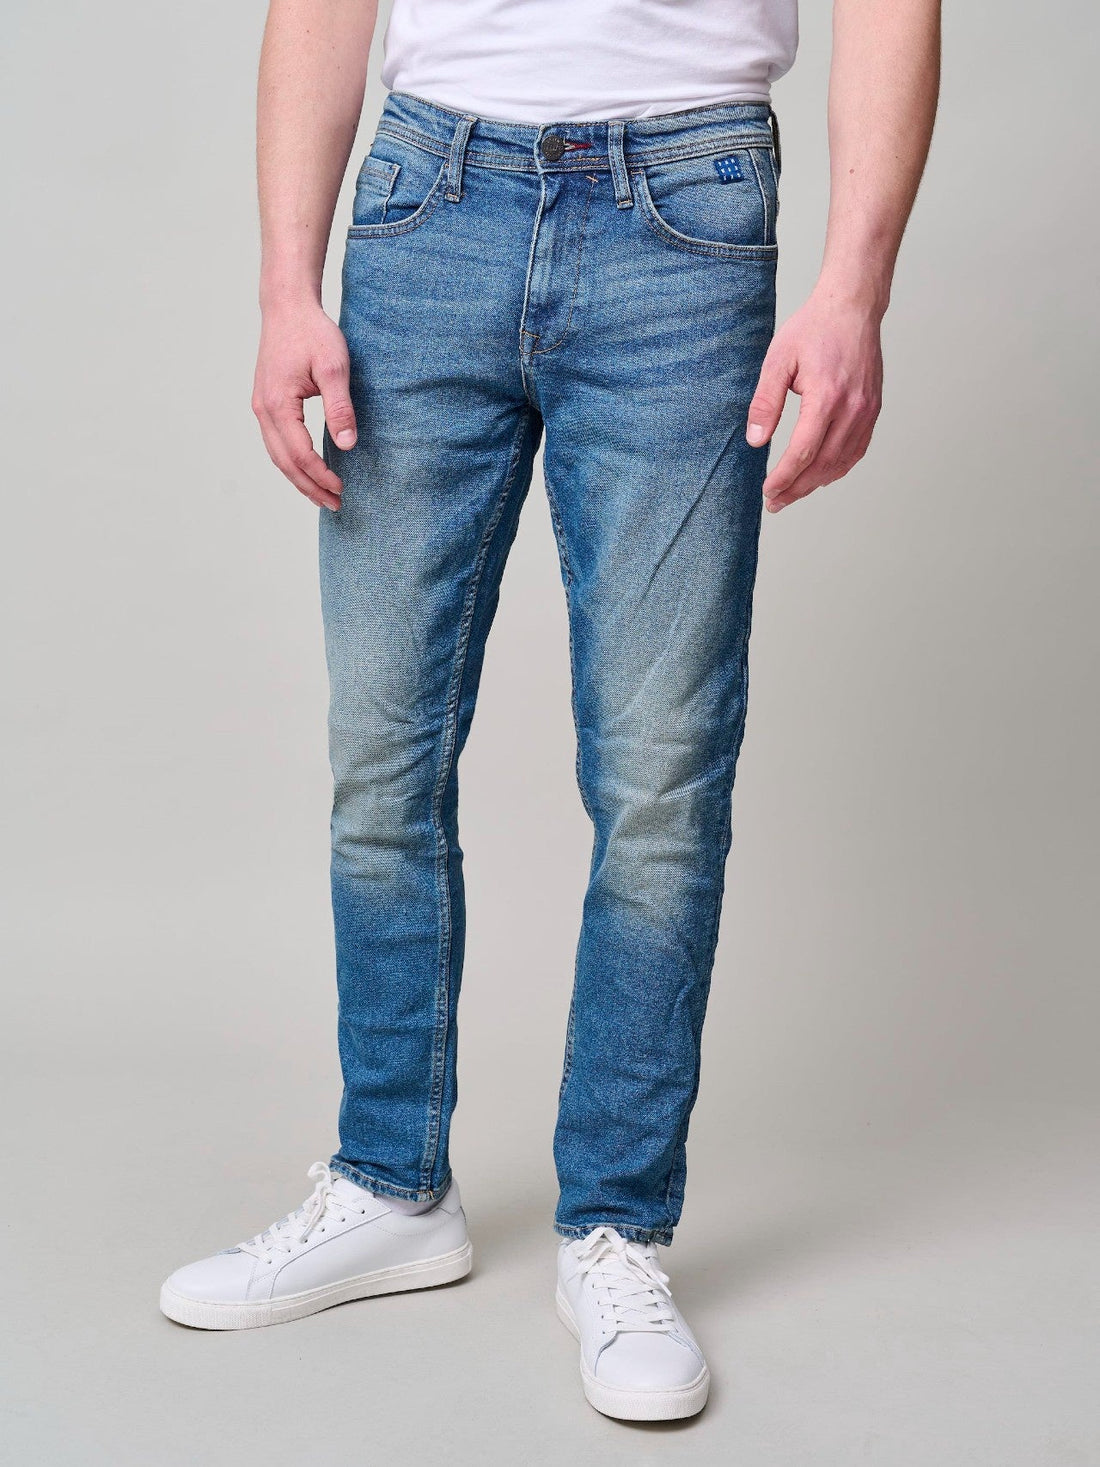 Blend 20710811 Twister Jeans - Thomson's Suits Ltd